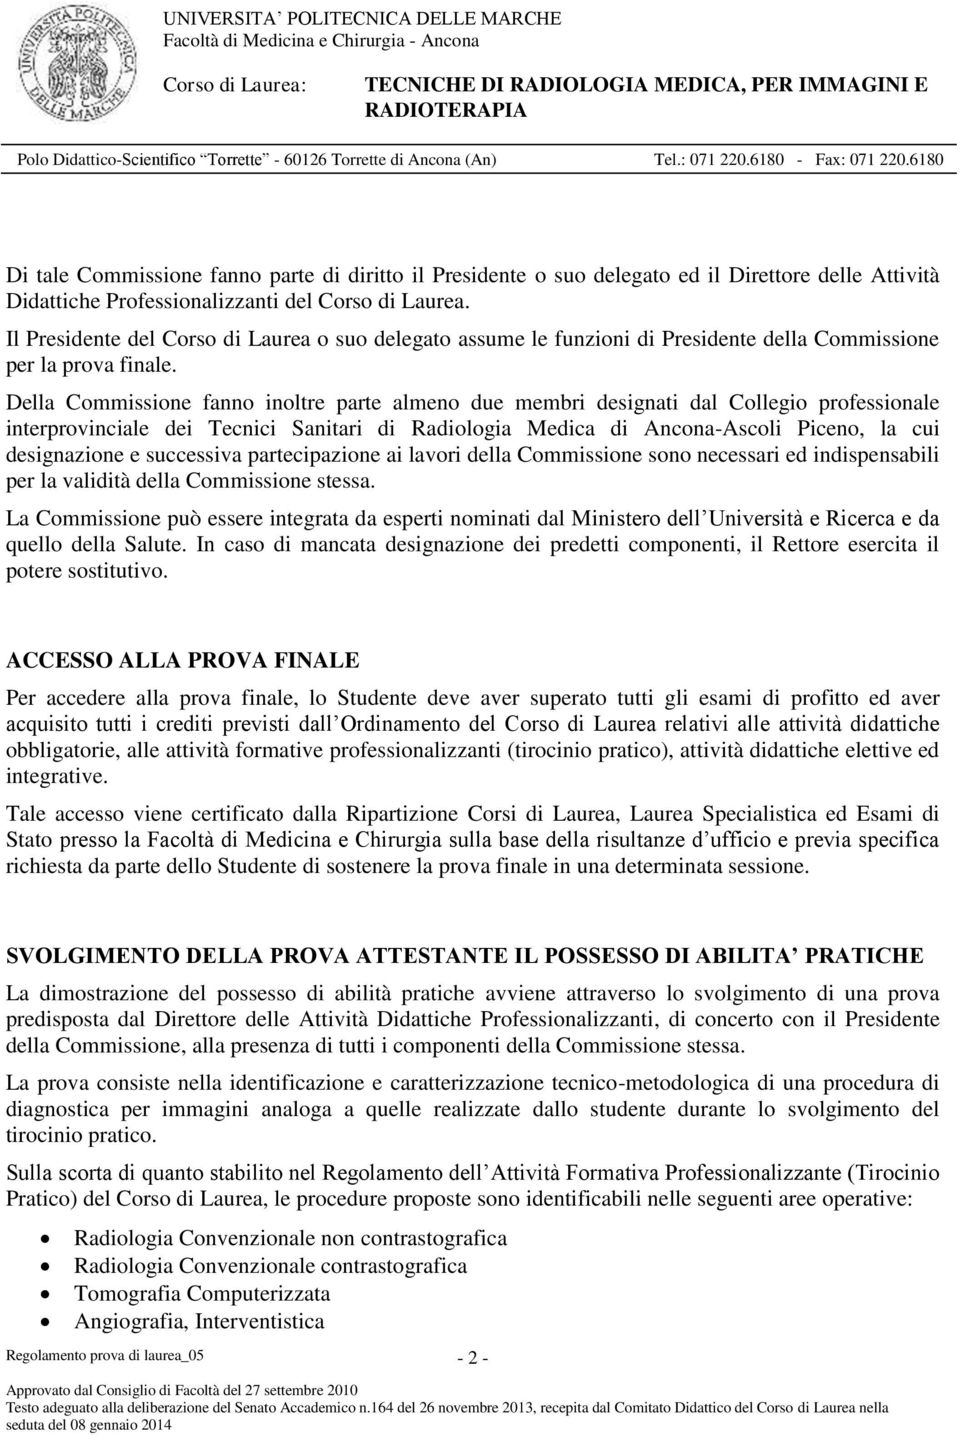 Della Commissione fanno inoltre parte almeno due membri designati dal Collegio professionale interprovinciale dei Tecnici Sanitari di Radiologia Medica di Ancona-Ascoli Piceno, la cui designazione e